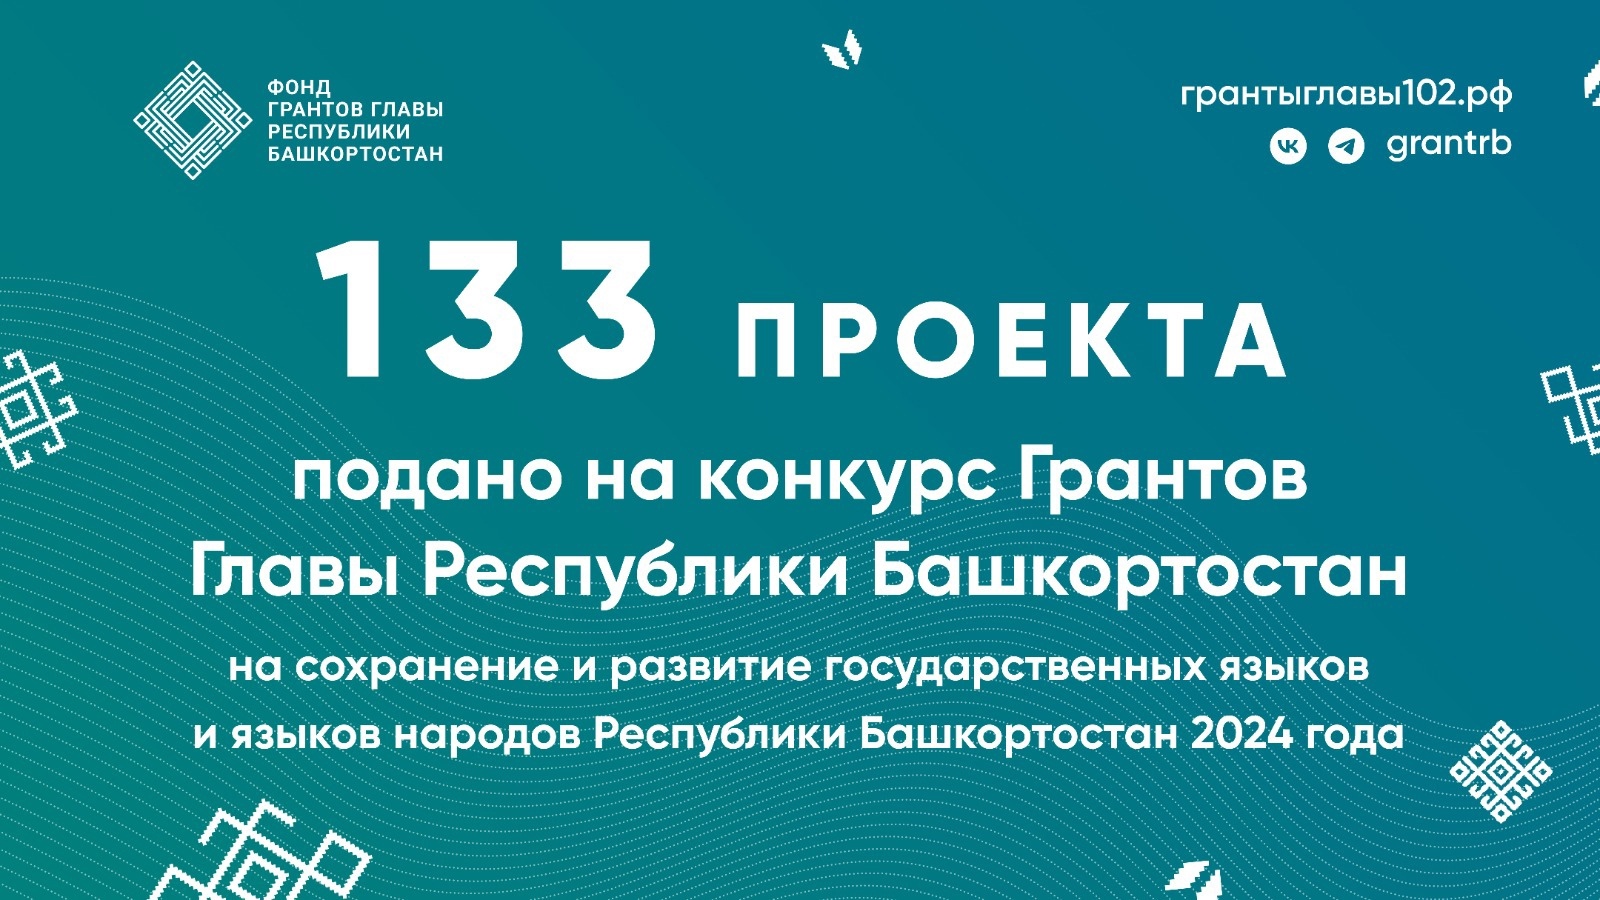 В Башкирии завершился прием заявок на конкурс грантов по языкам